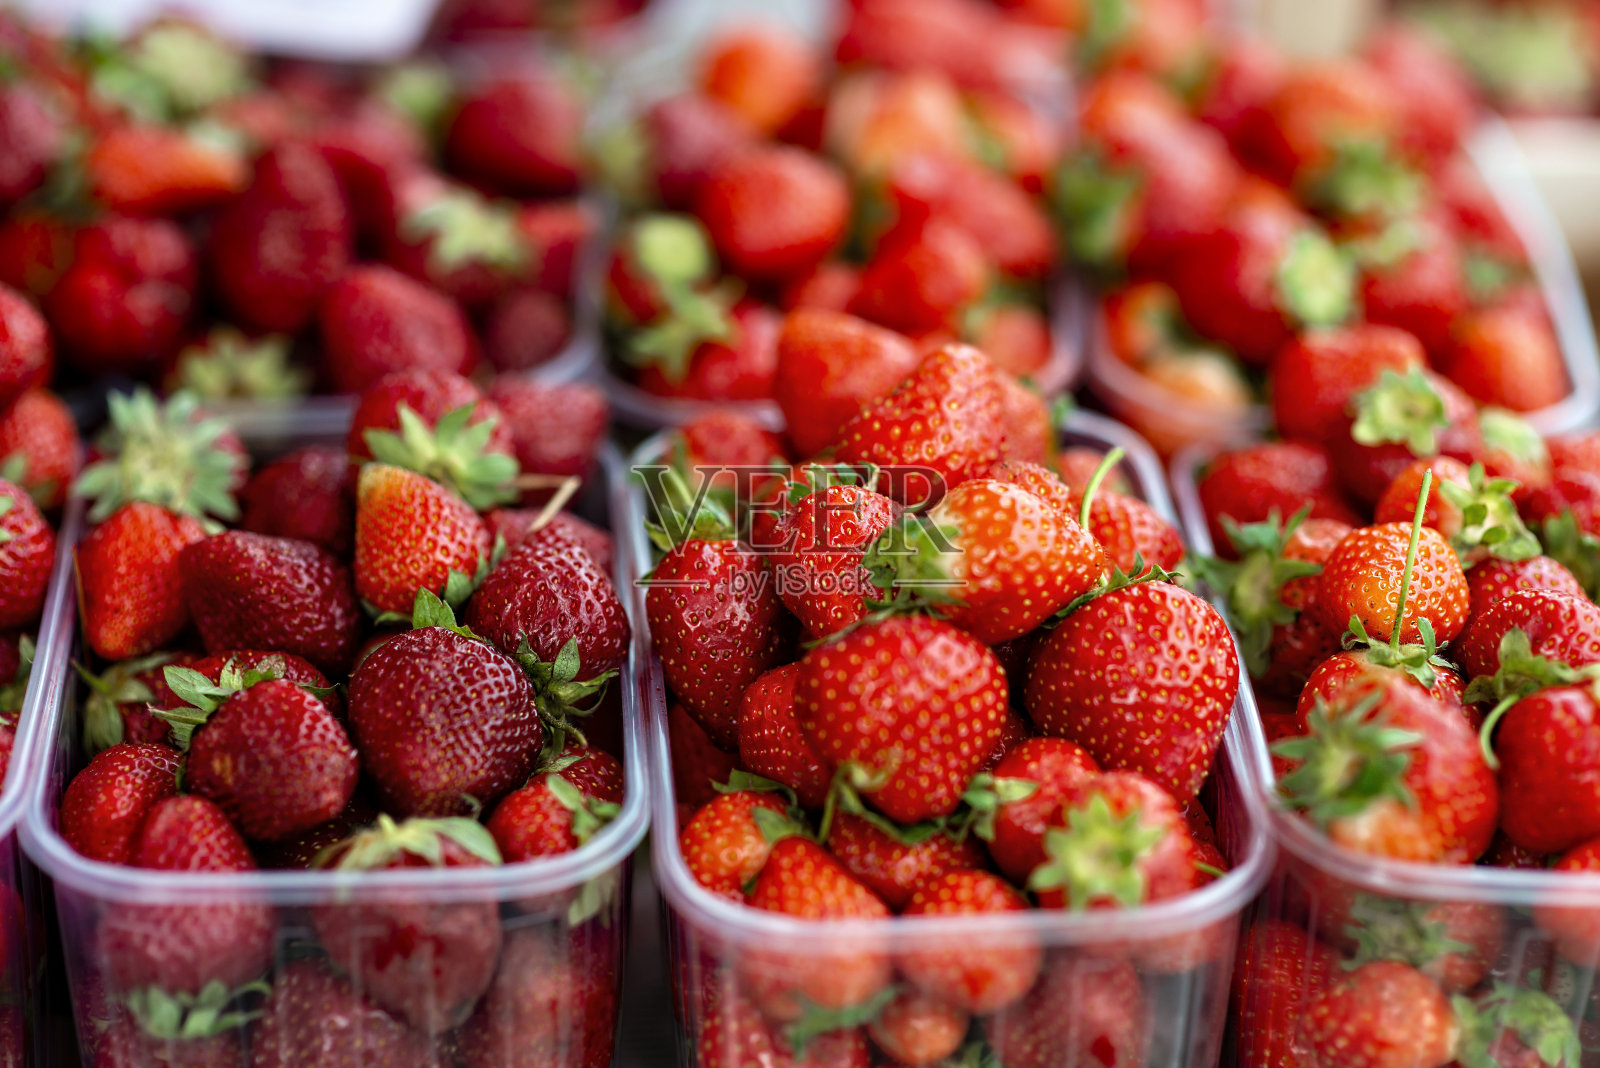 盒装新鲜草莓的市场形象照片摄影图片